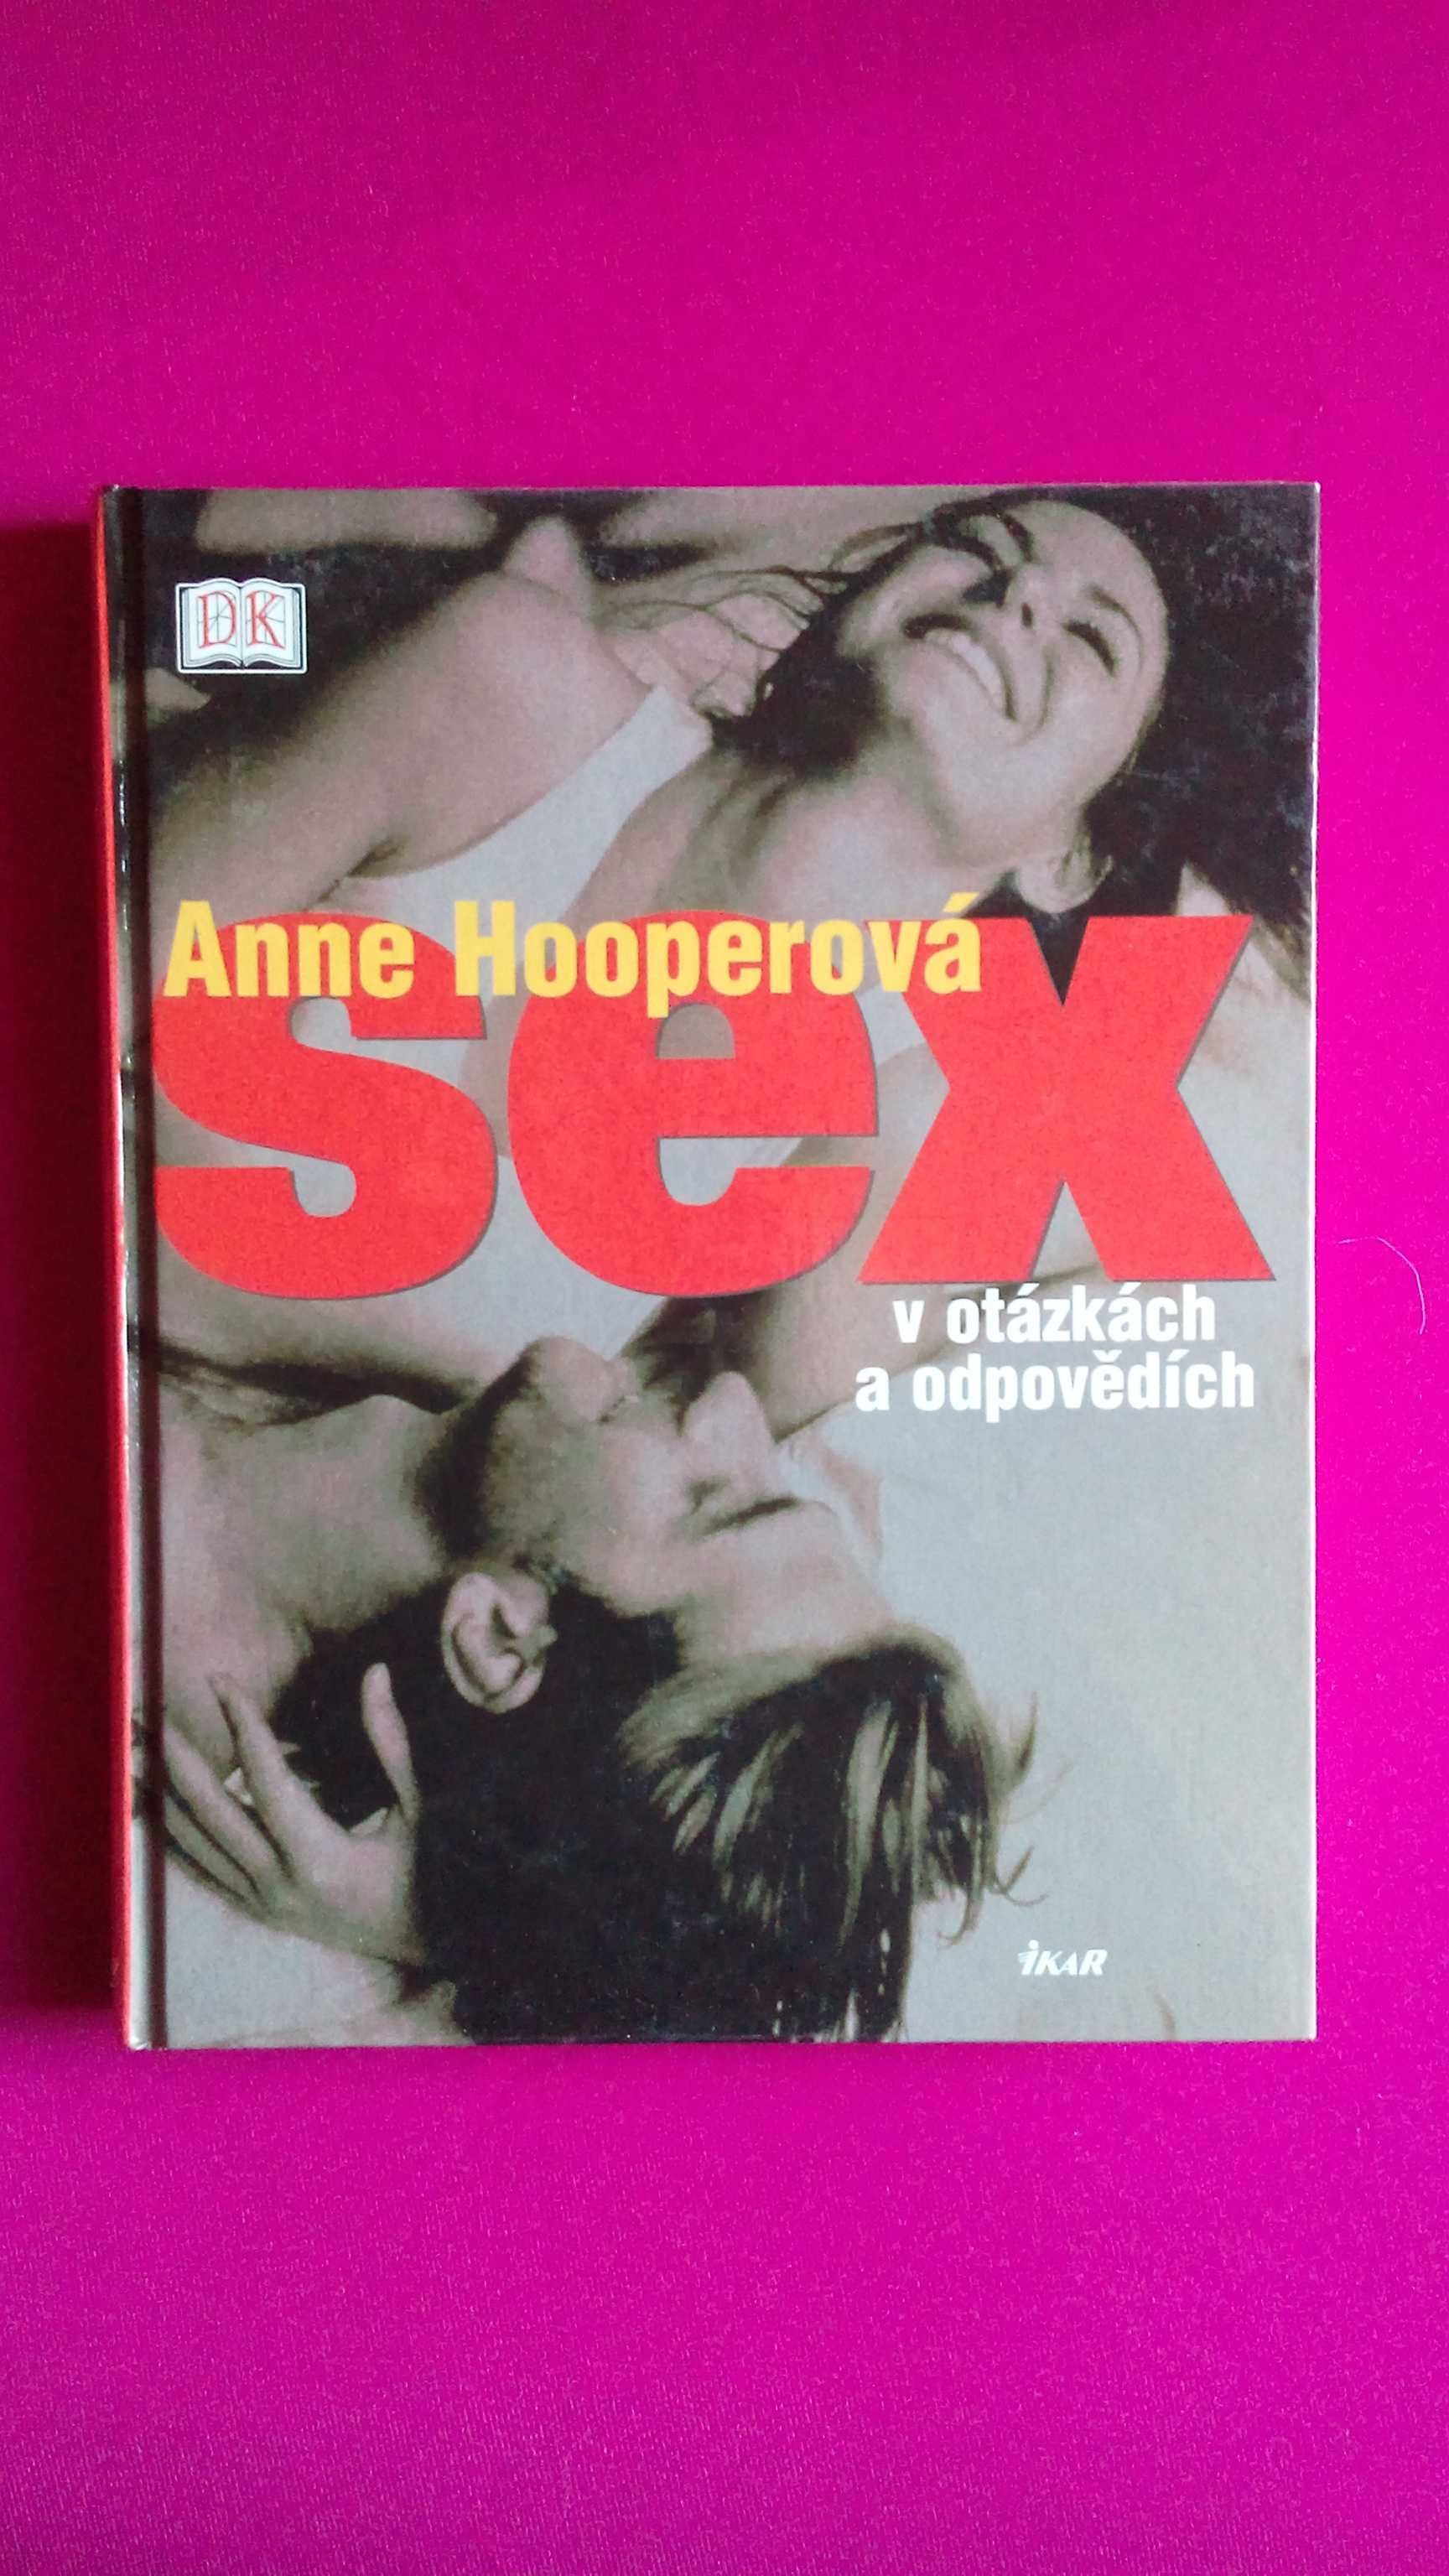 иллюстрированная книга о сексе на словацком языке